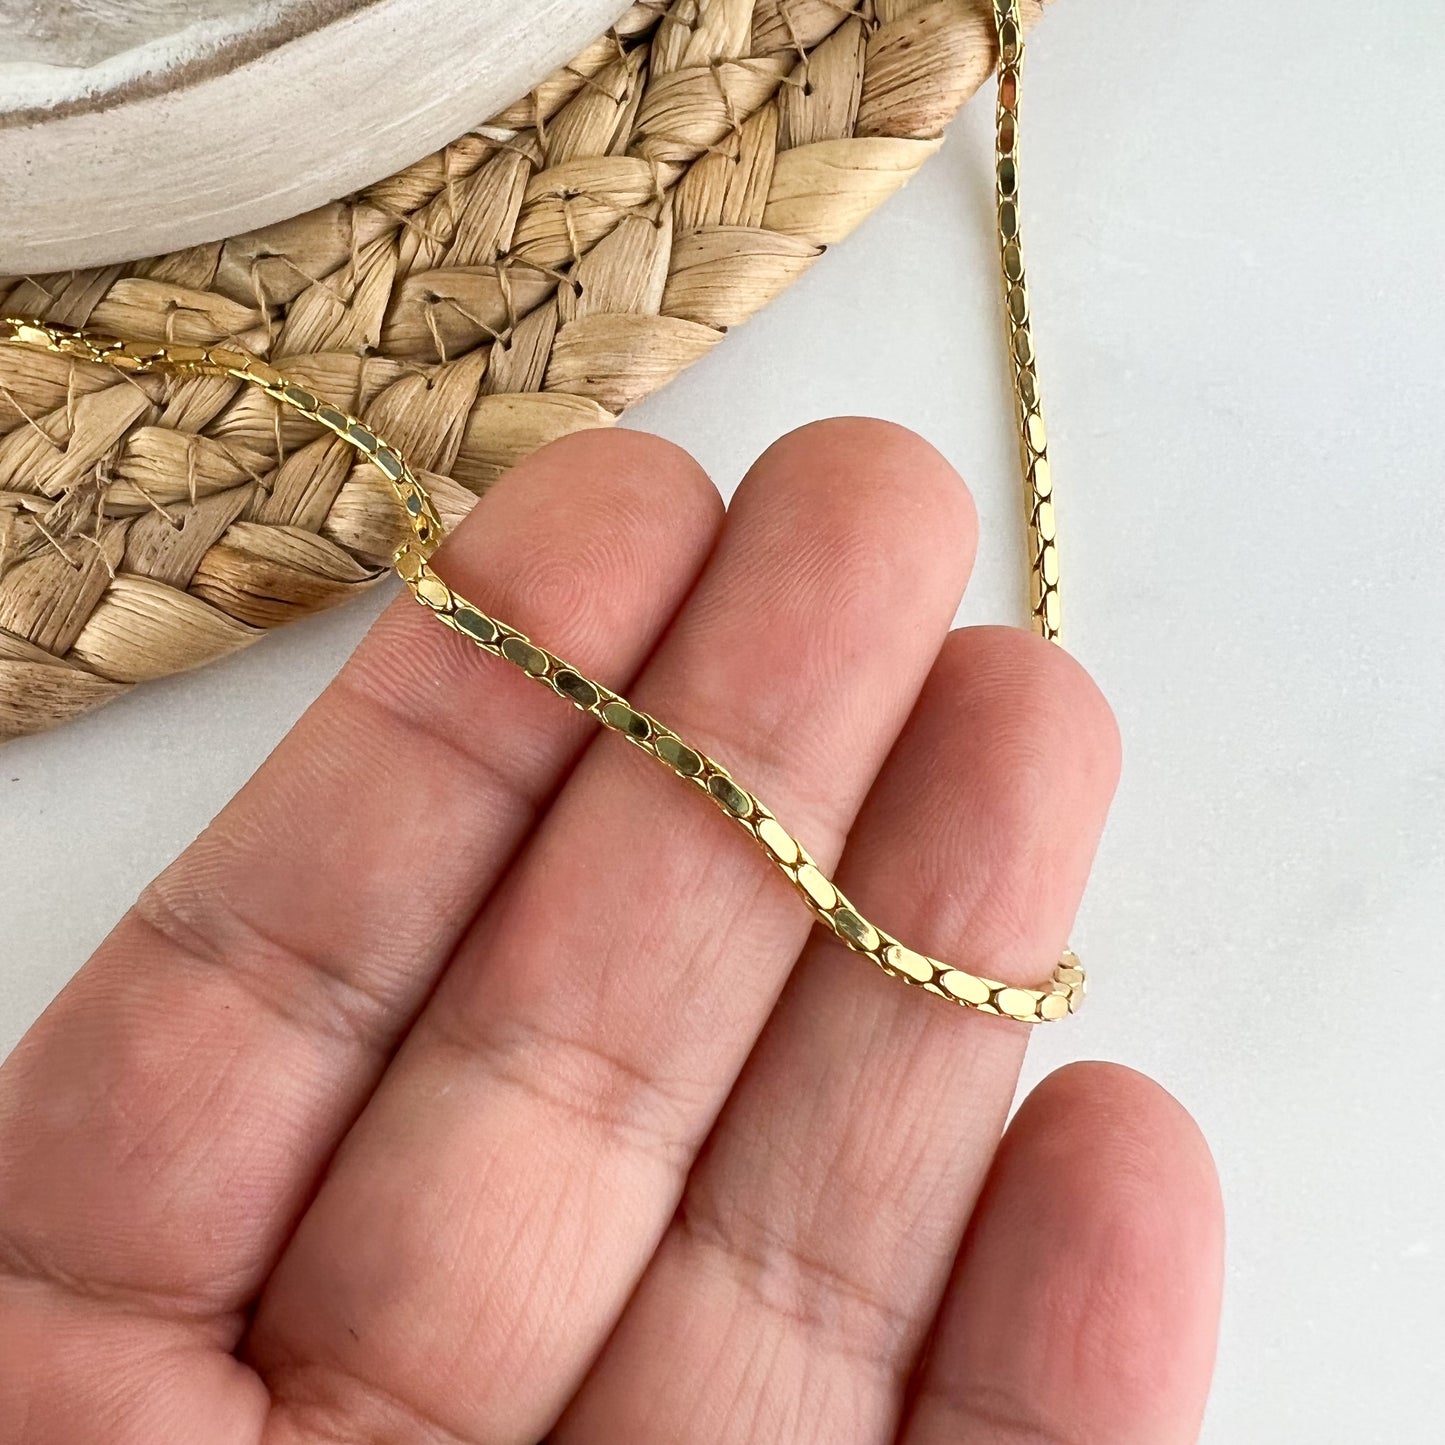 Gold Snake necklace